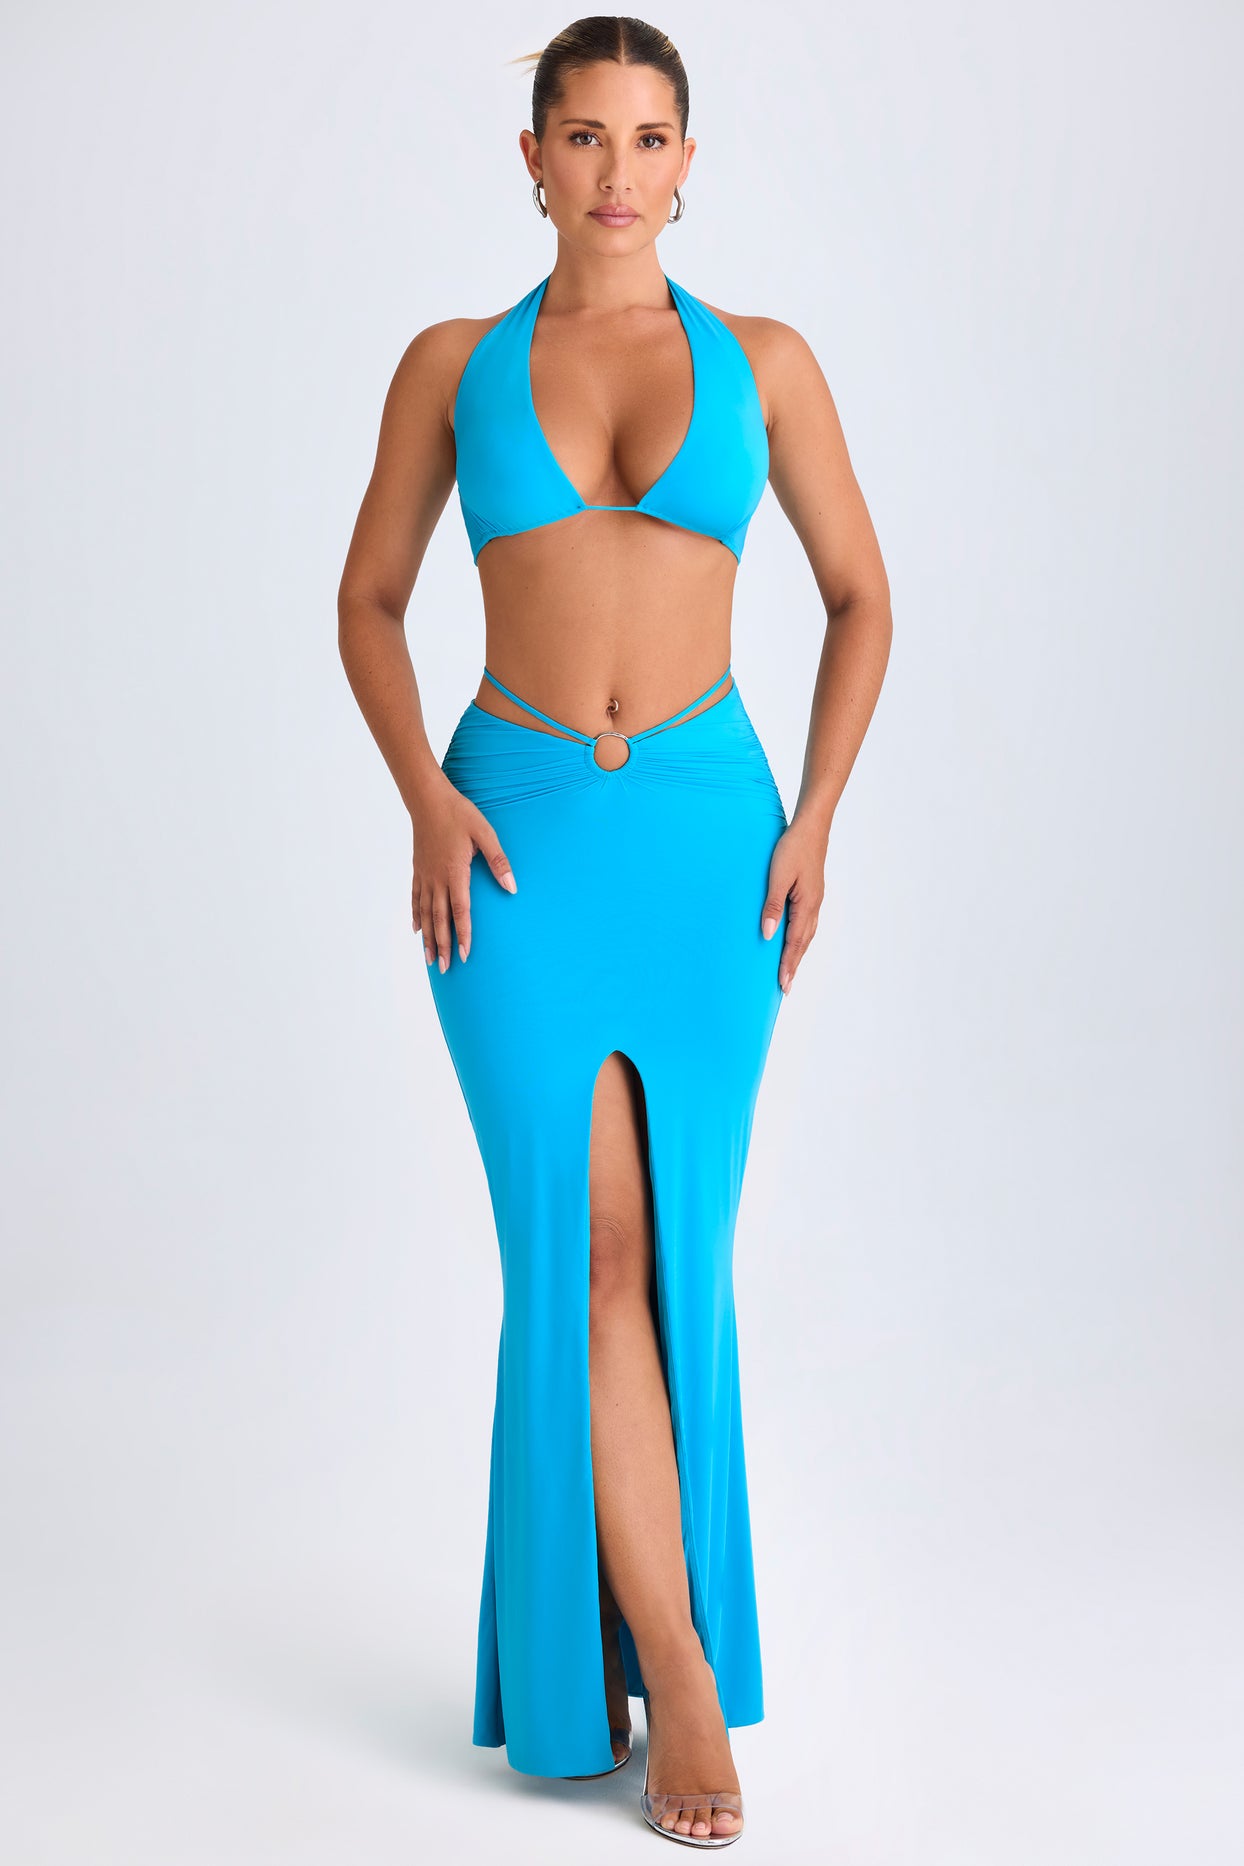 Jupe longue taille mi-haute avec détails matériels, bleu aqua